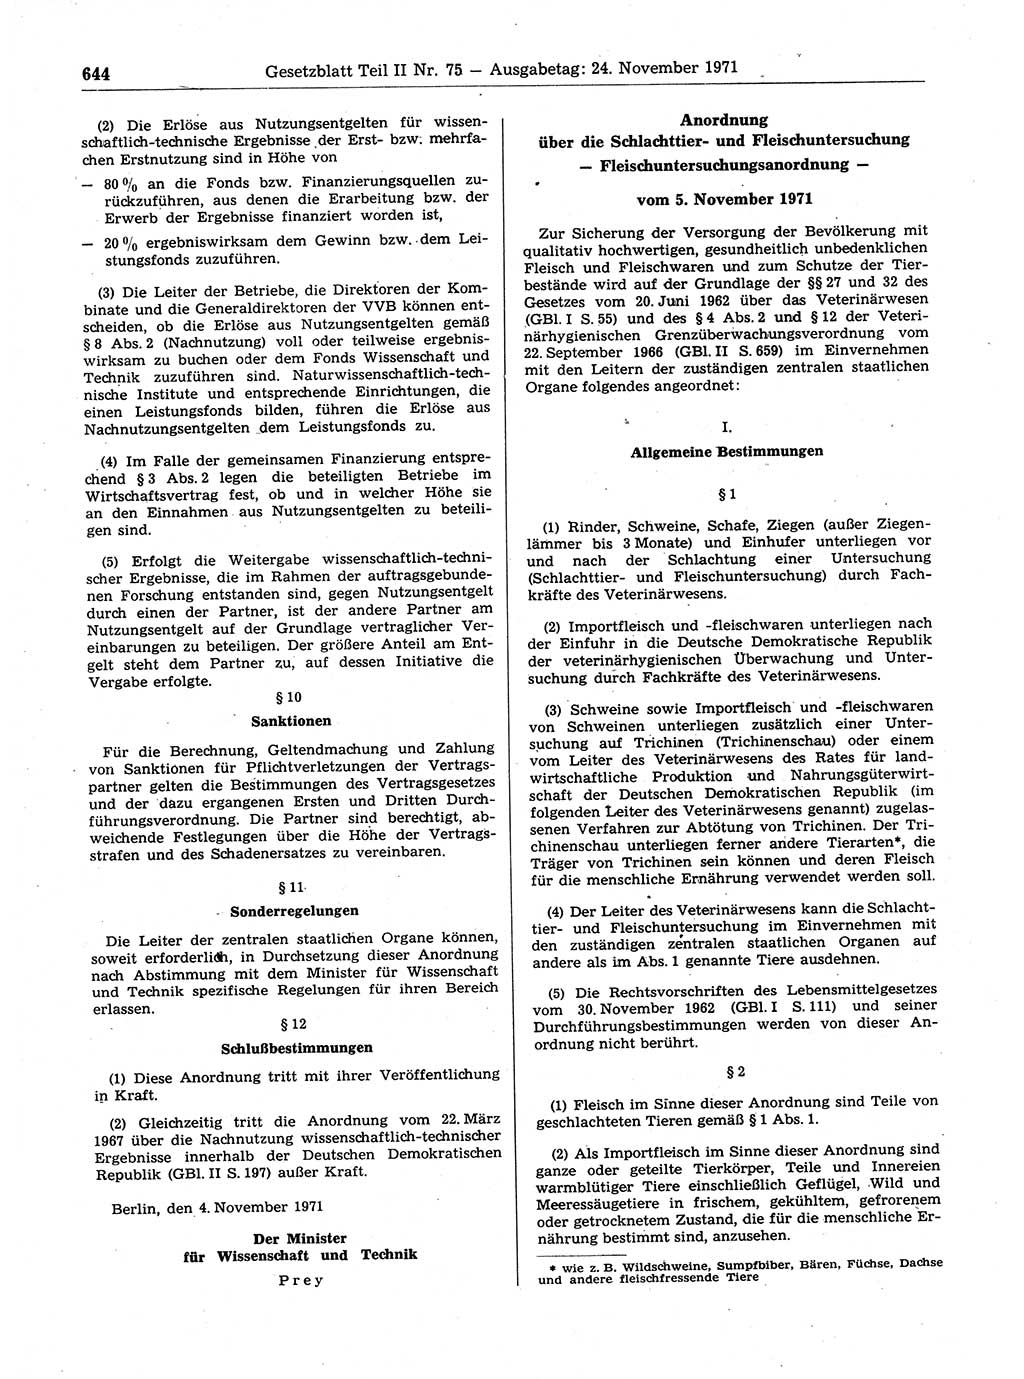 Gesetzblatt (GBl.) der Deutschen Demokratischen Republik (DDR) Teil ⅠⅠ 1971, Seite 644 (GBl. DDR ⅠⅠ 1971, S. 644)